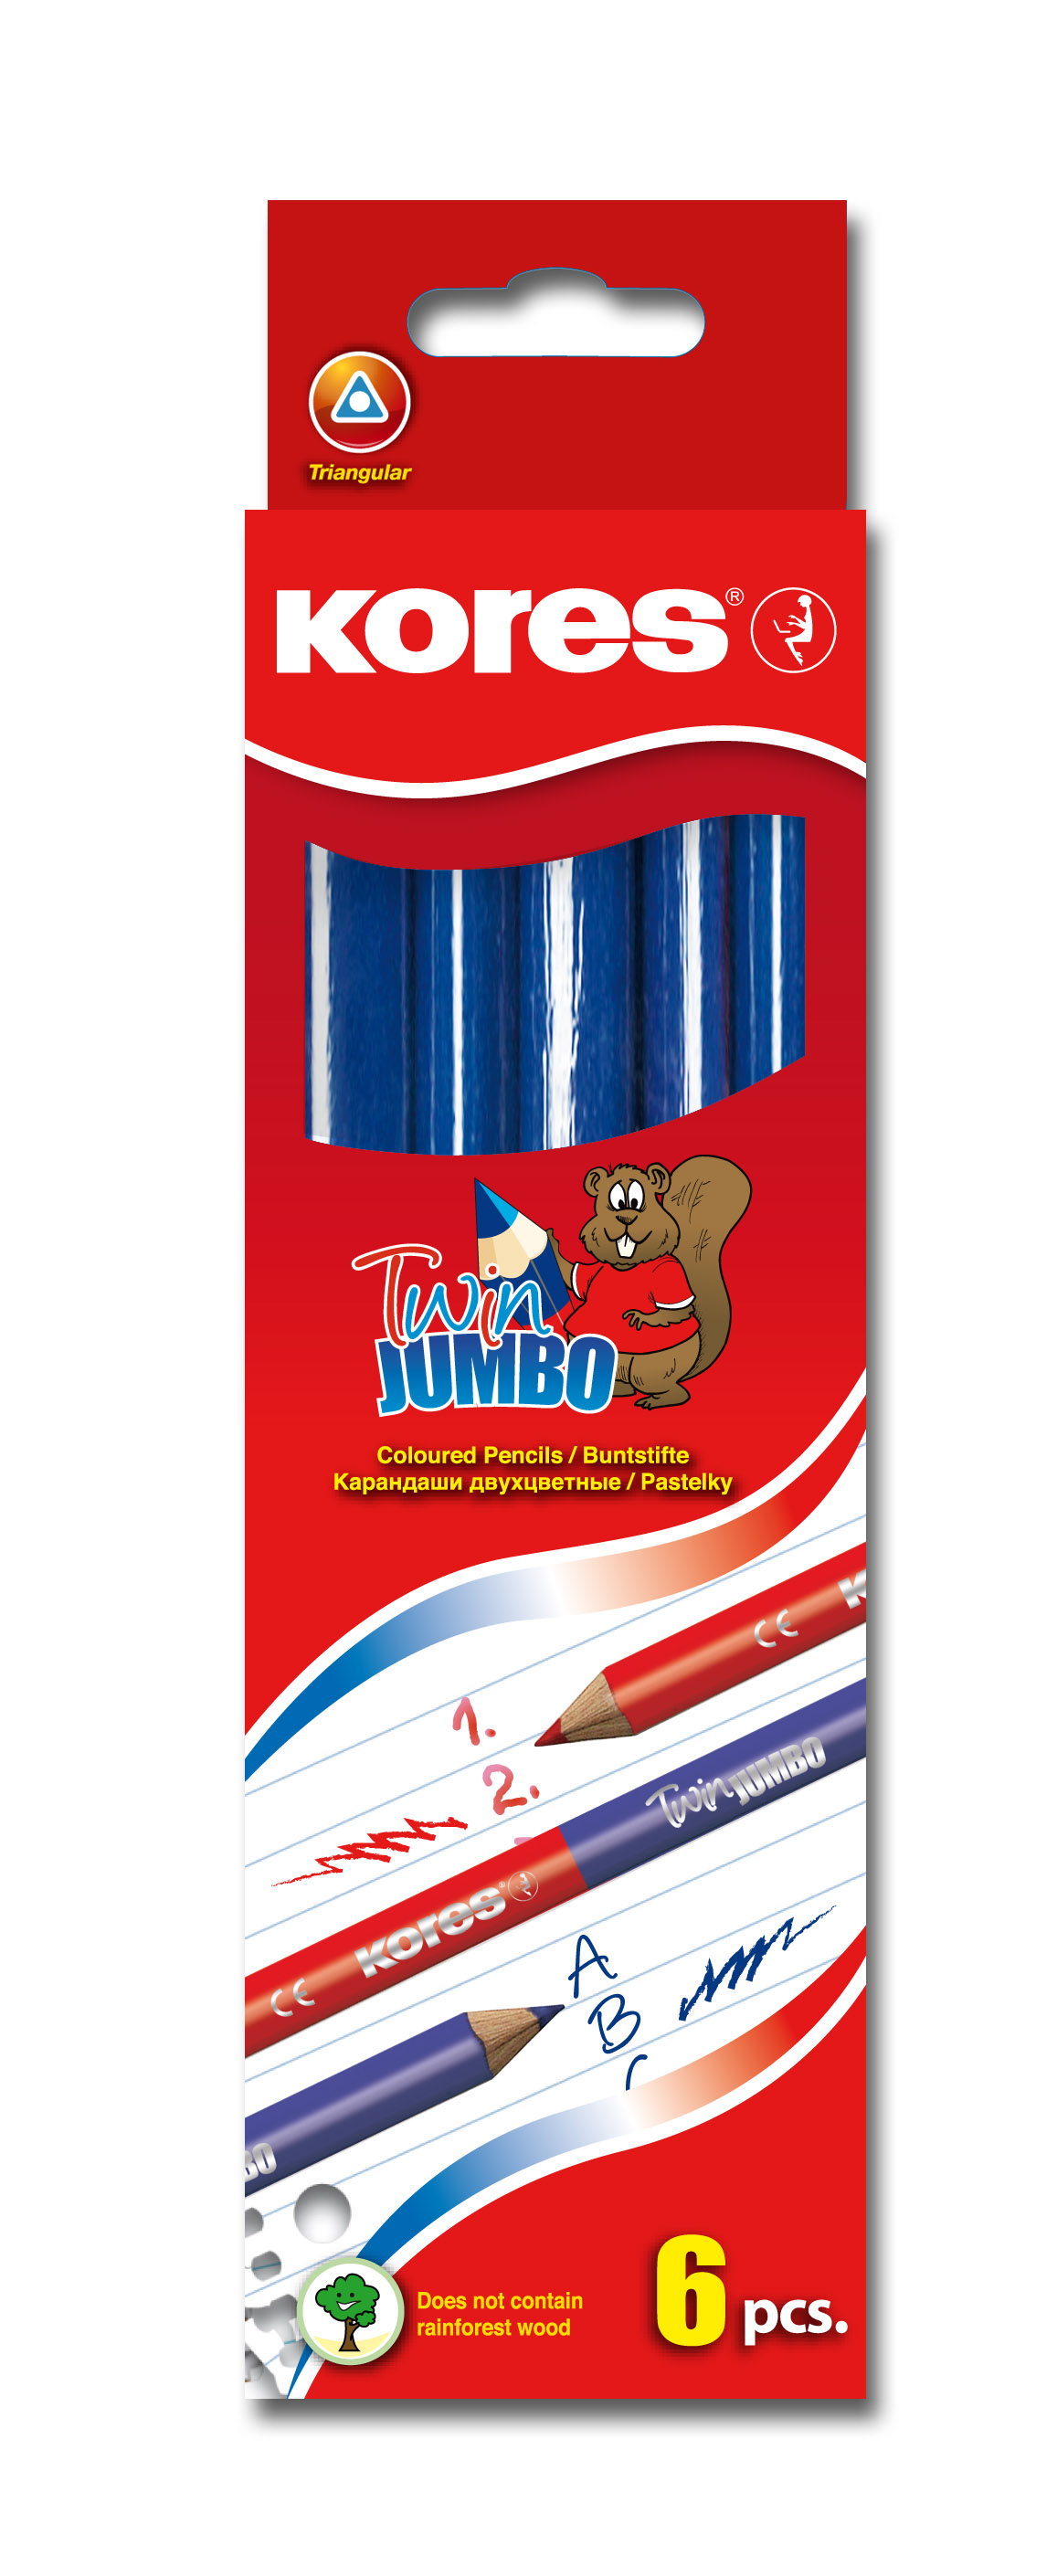 Učitelská tužka Kores Jumbo Twin červená-modrá